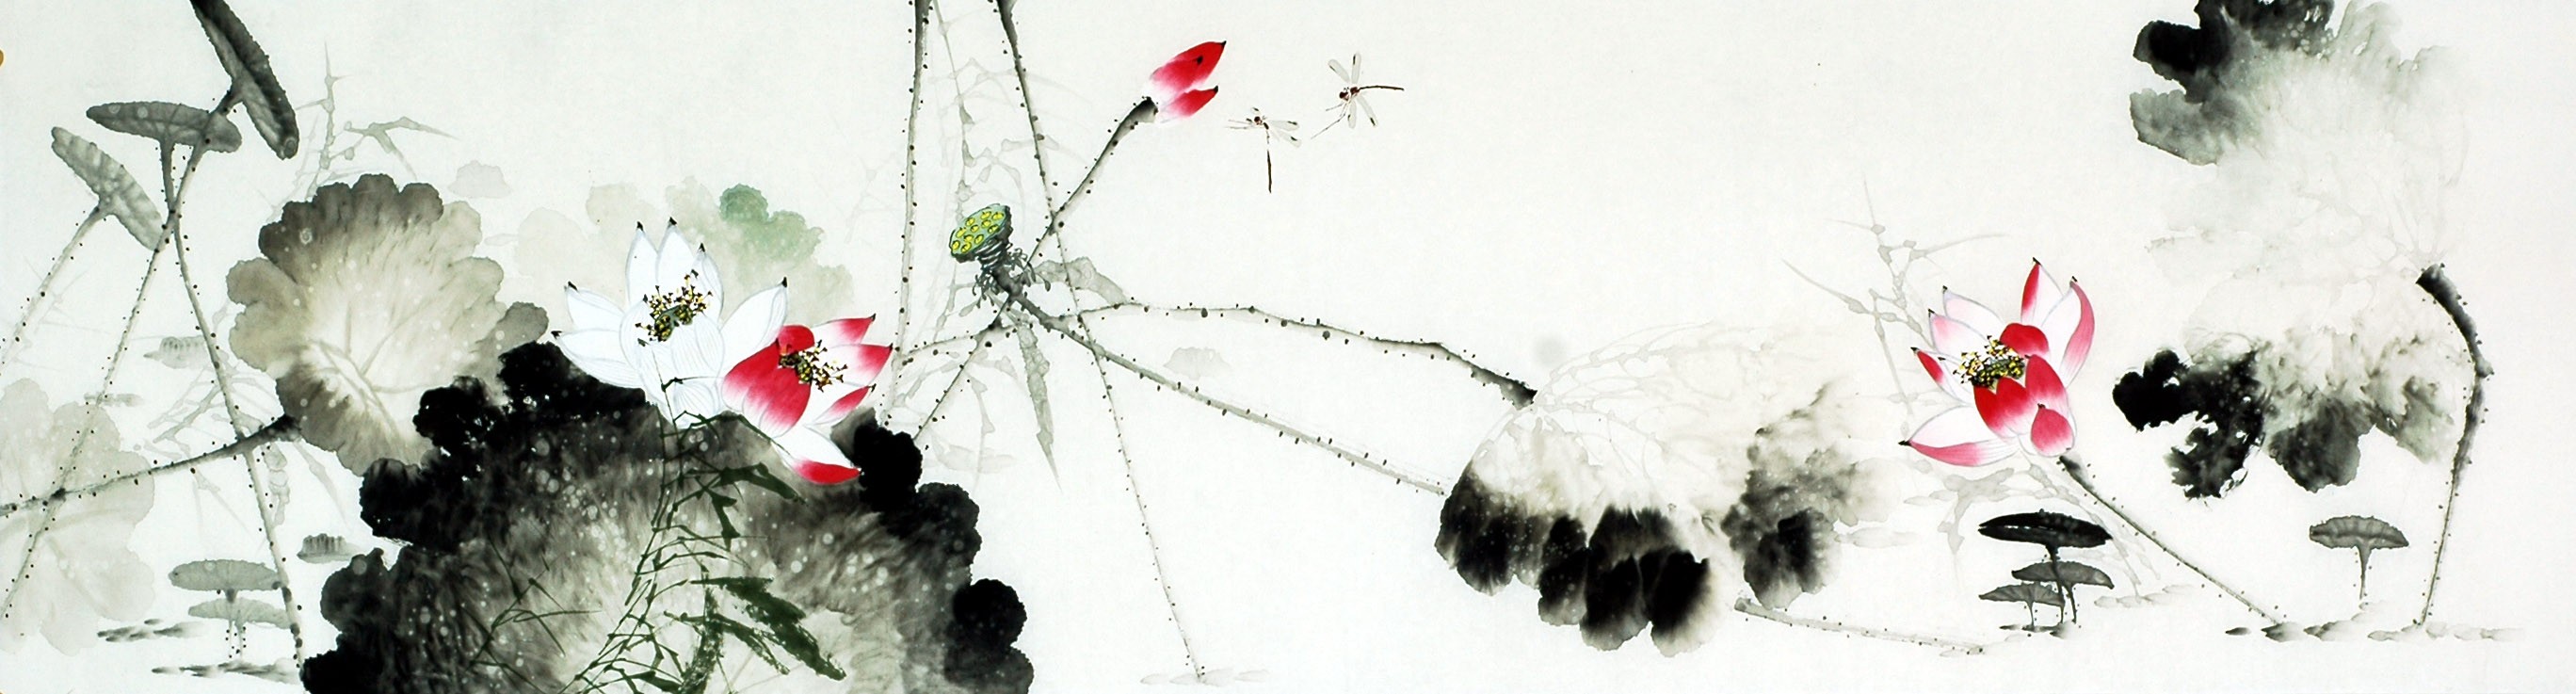 Chinese Lotus Painting - CNAG010102